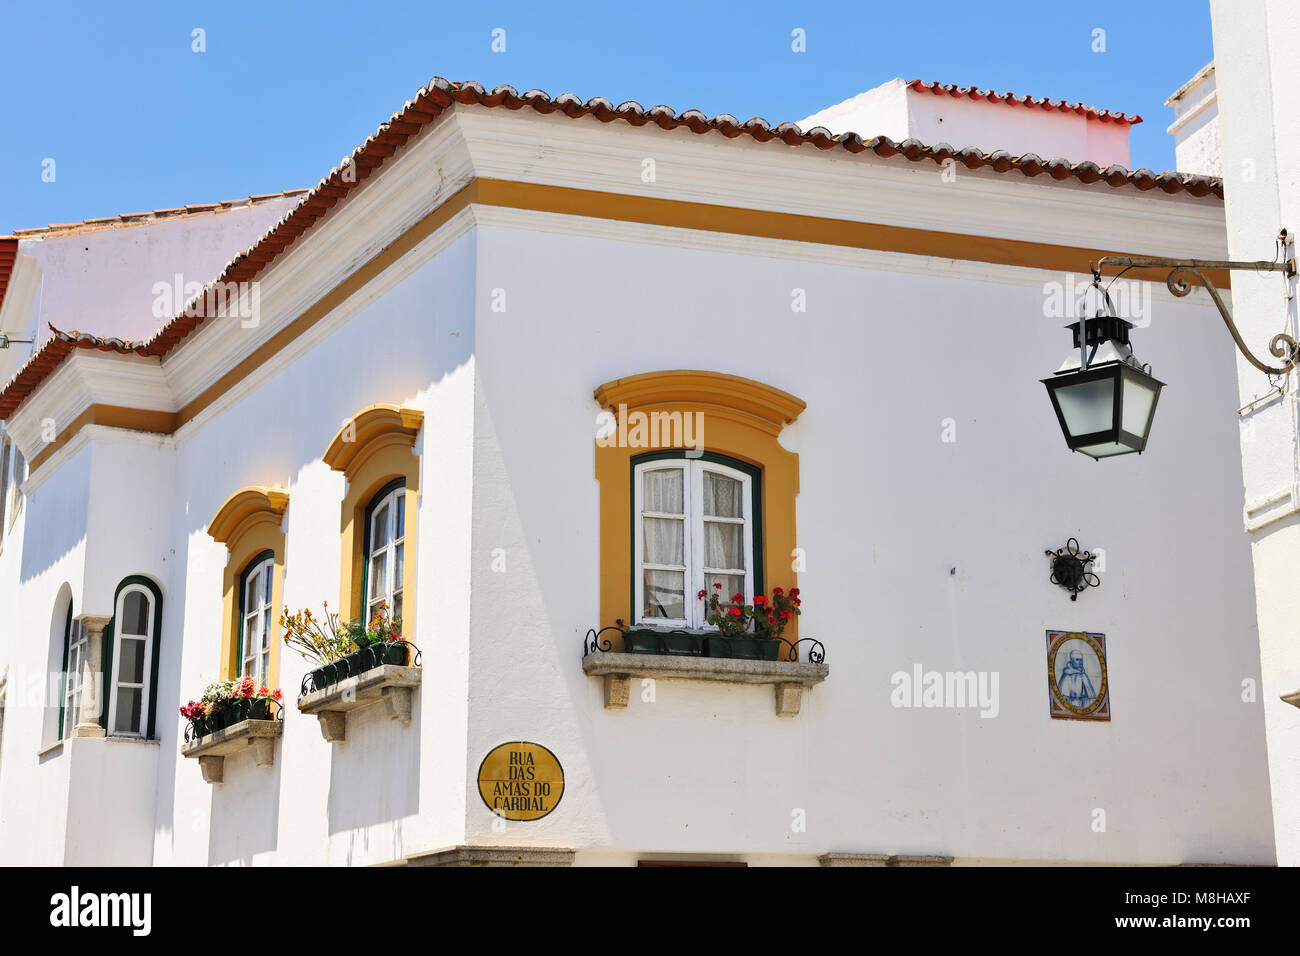 Centre historique d'Évora, un site classé au patrimoine mondial. Portugal Banque D'Images